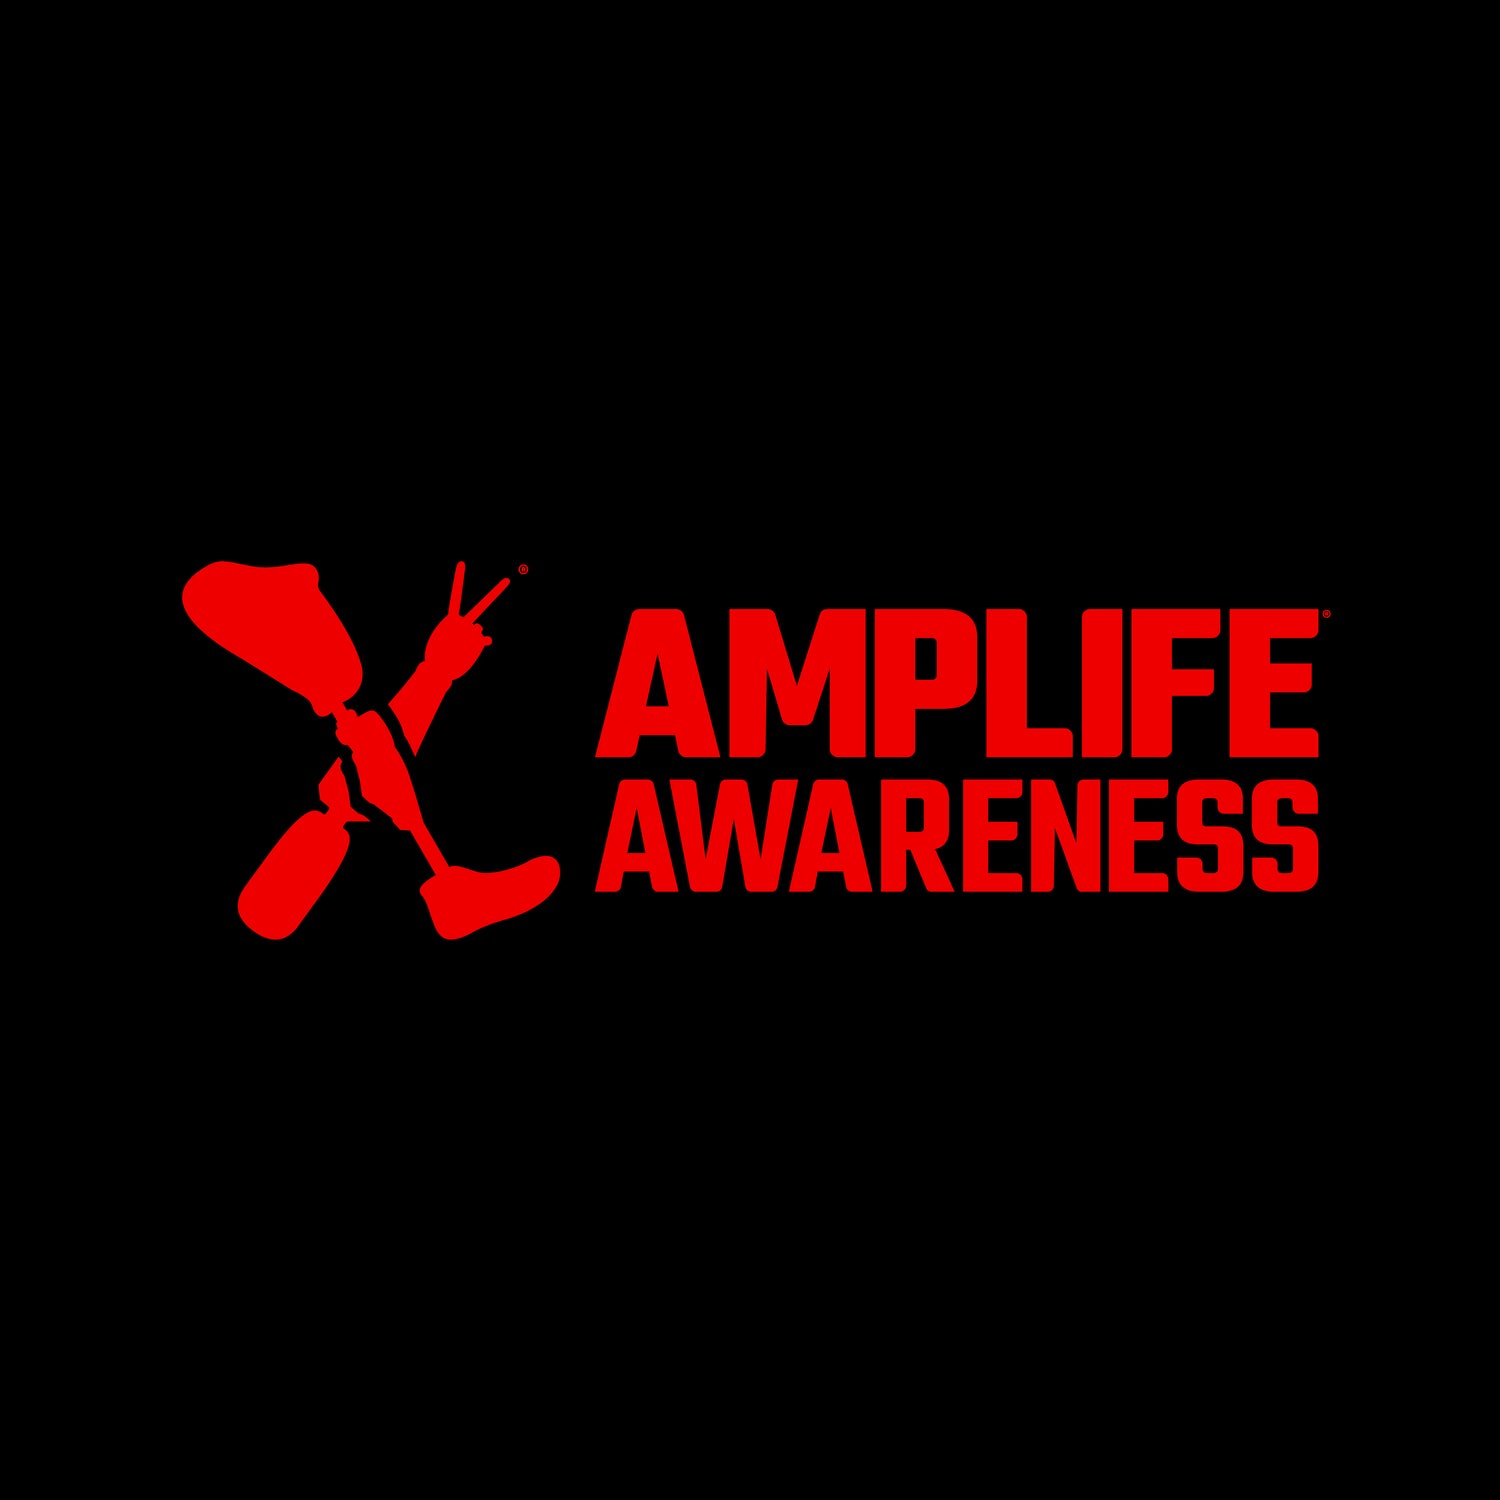 Amplife® Awareness logo